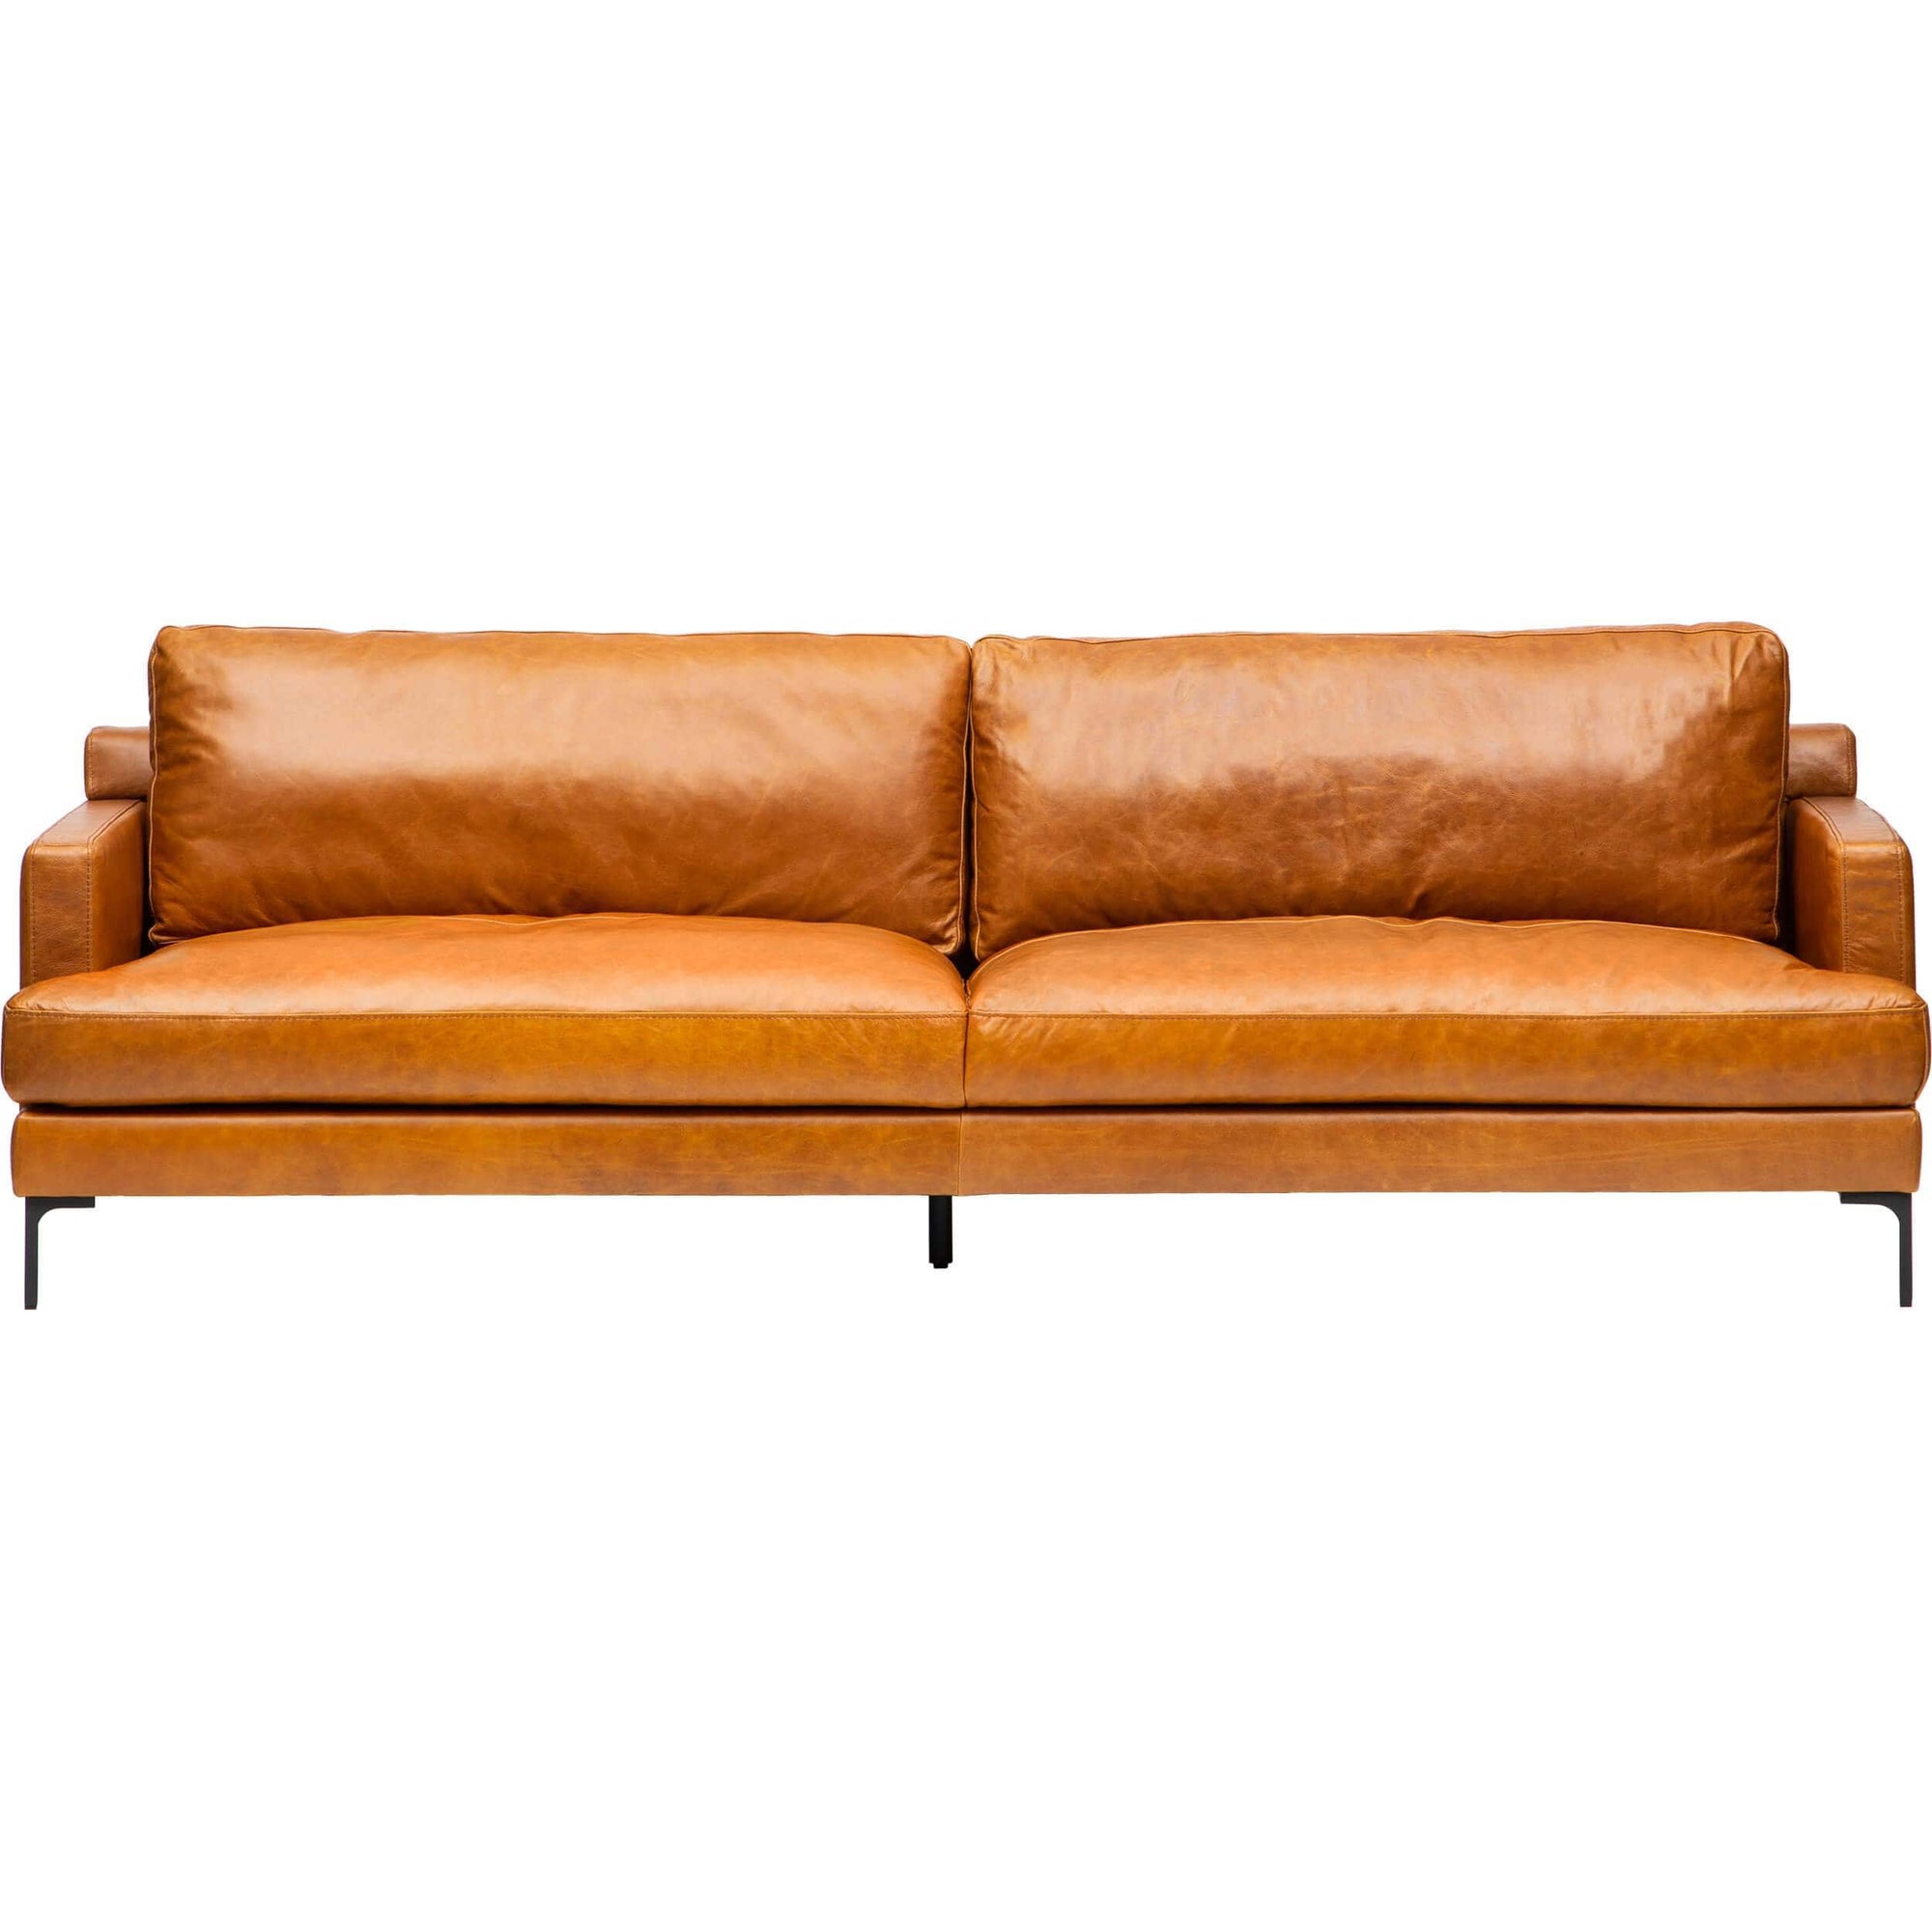 Ansel Leather Sofa, Oil Buffalo Camel – High Fashion Home